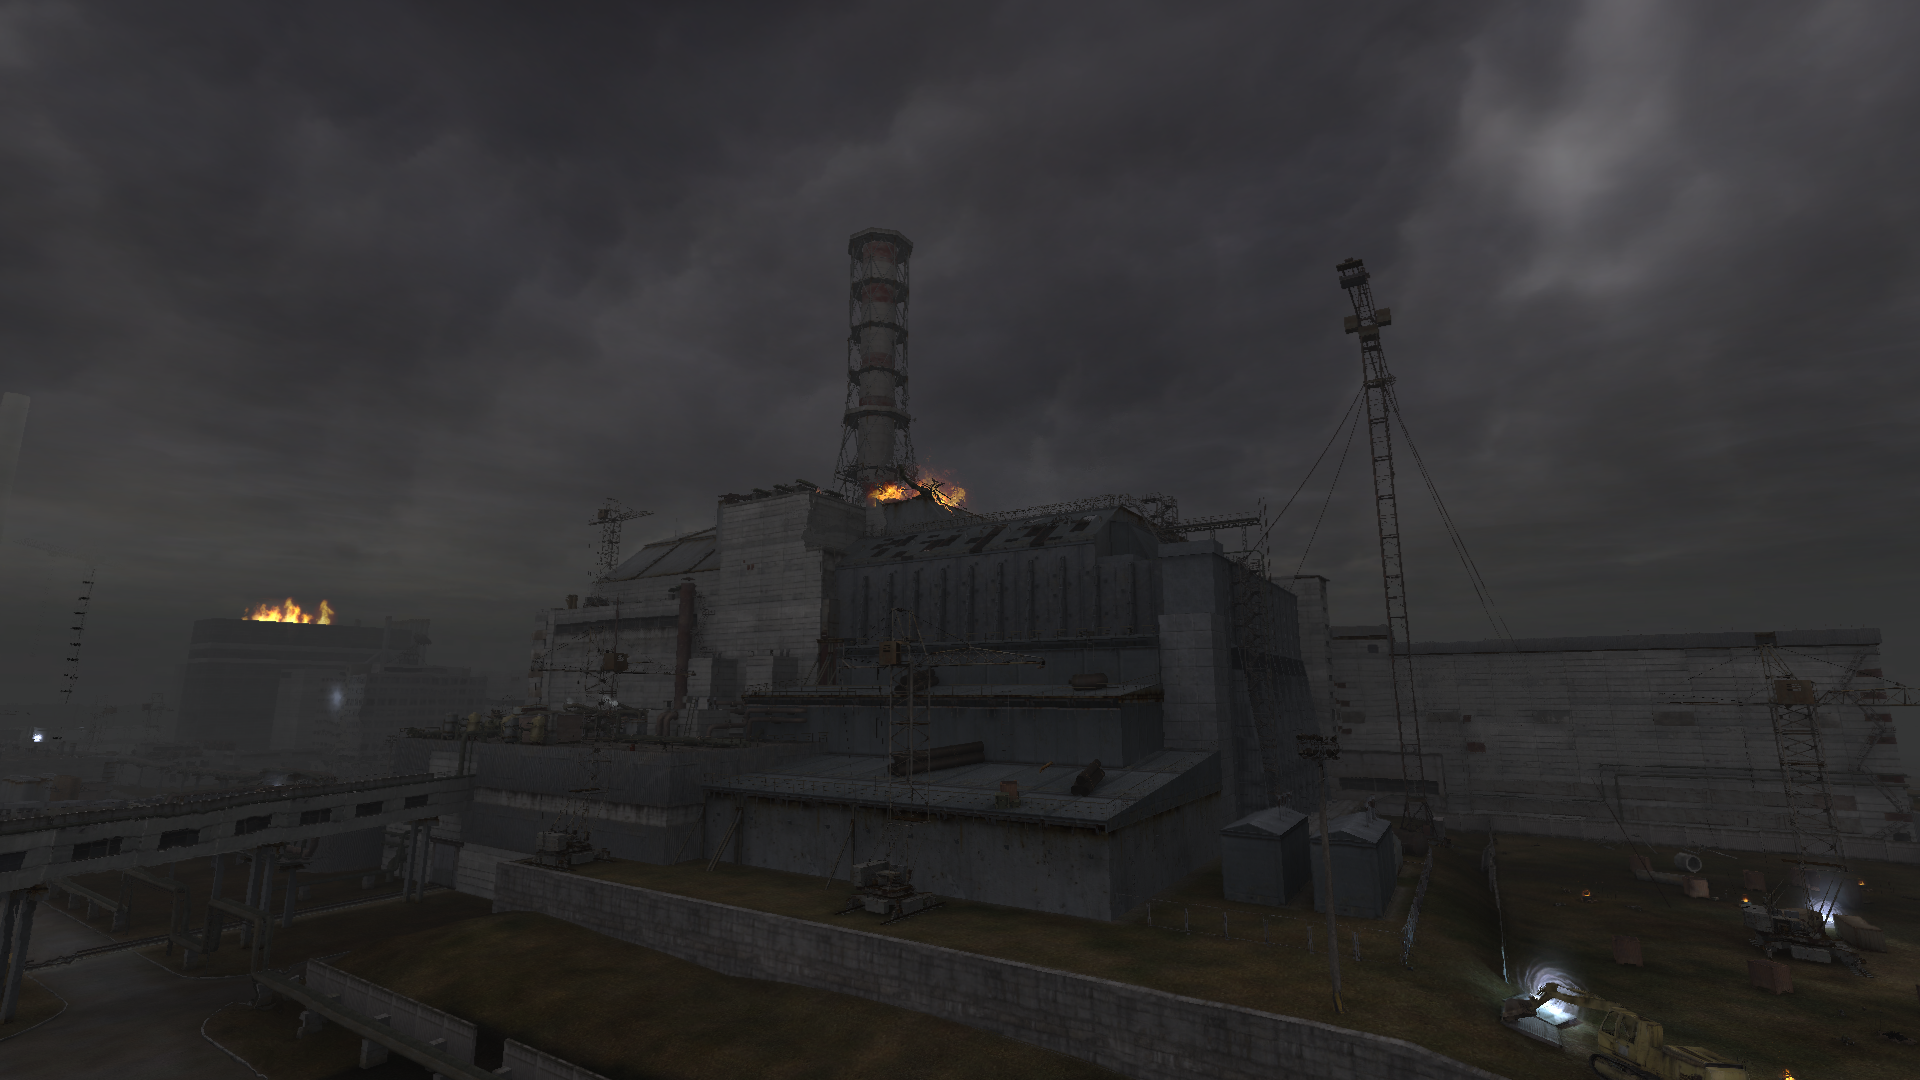 Чернобыль перерождение. Сталкер 2 ЧАЭС. Четвёртый энергоблок ЧАЭС В сталкере. Сталкер чистое небо ЧАЭС. ЧАЭС сталкер тень Чернобыля.